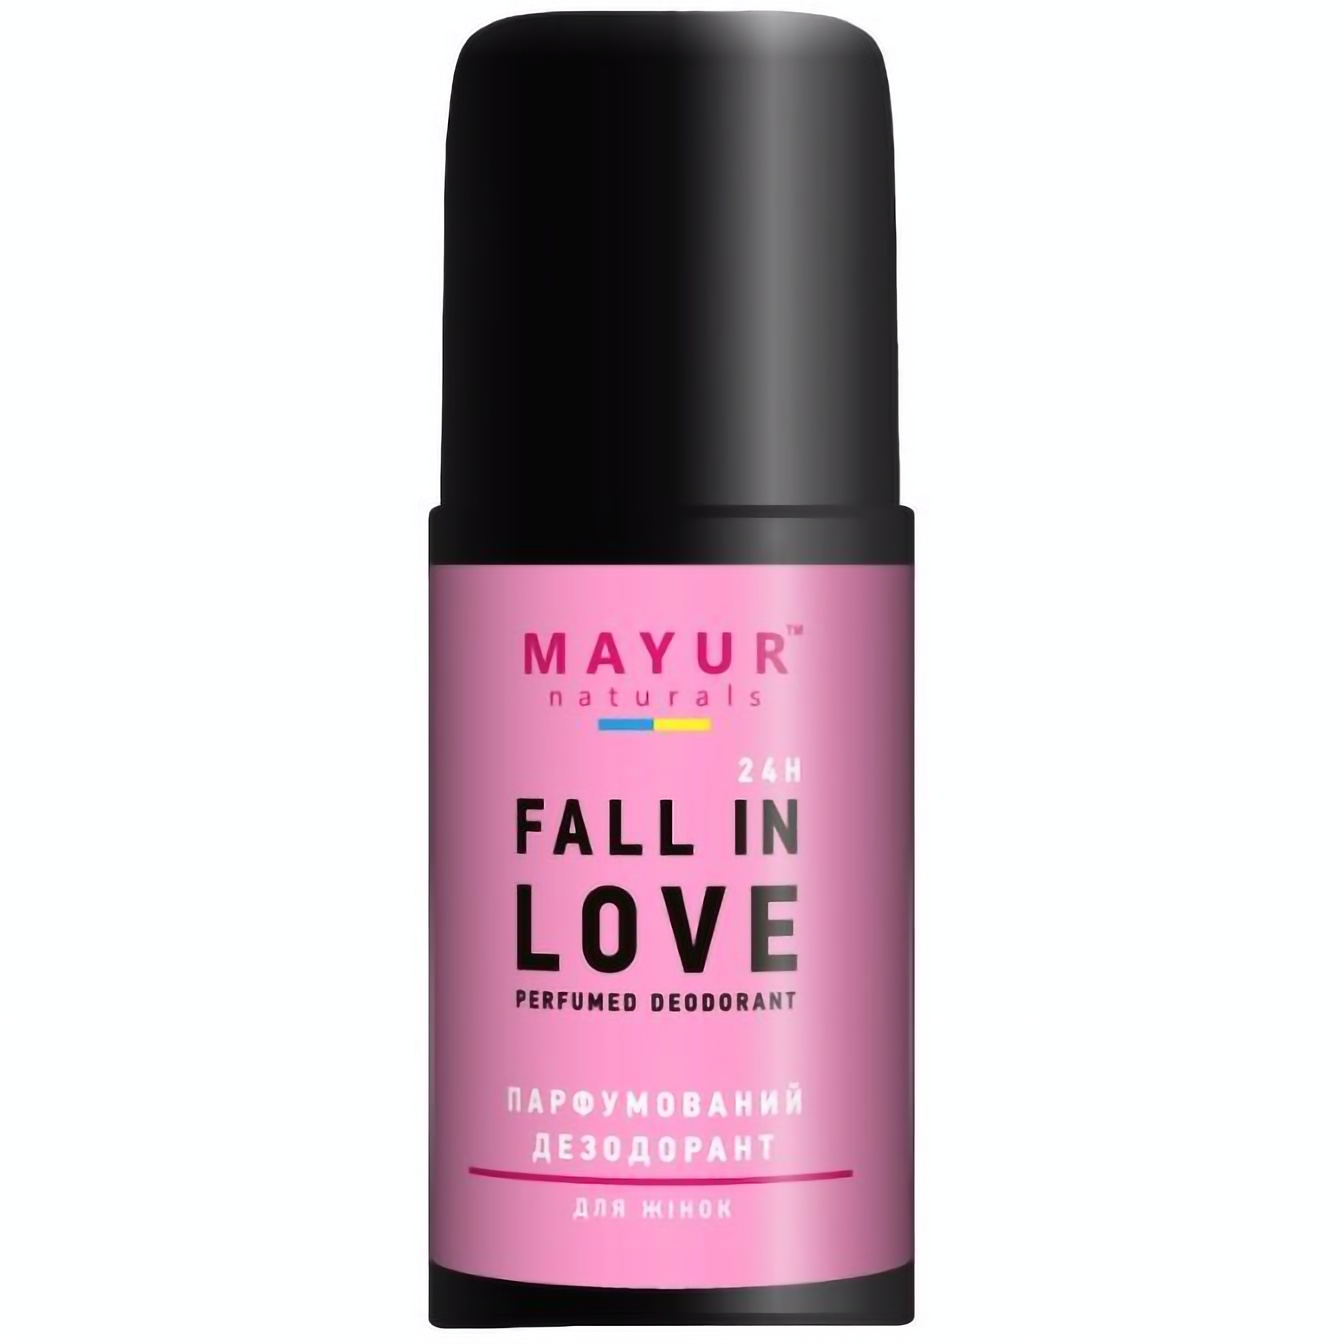 Дезодорант парфюмированный Mayur Fall in love, 50 мл - фото 1